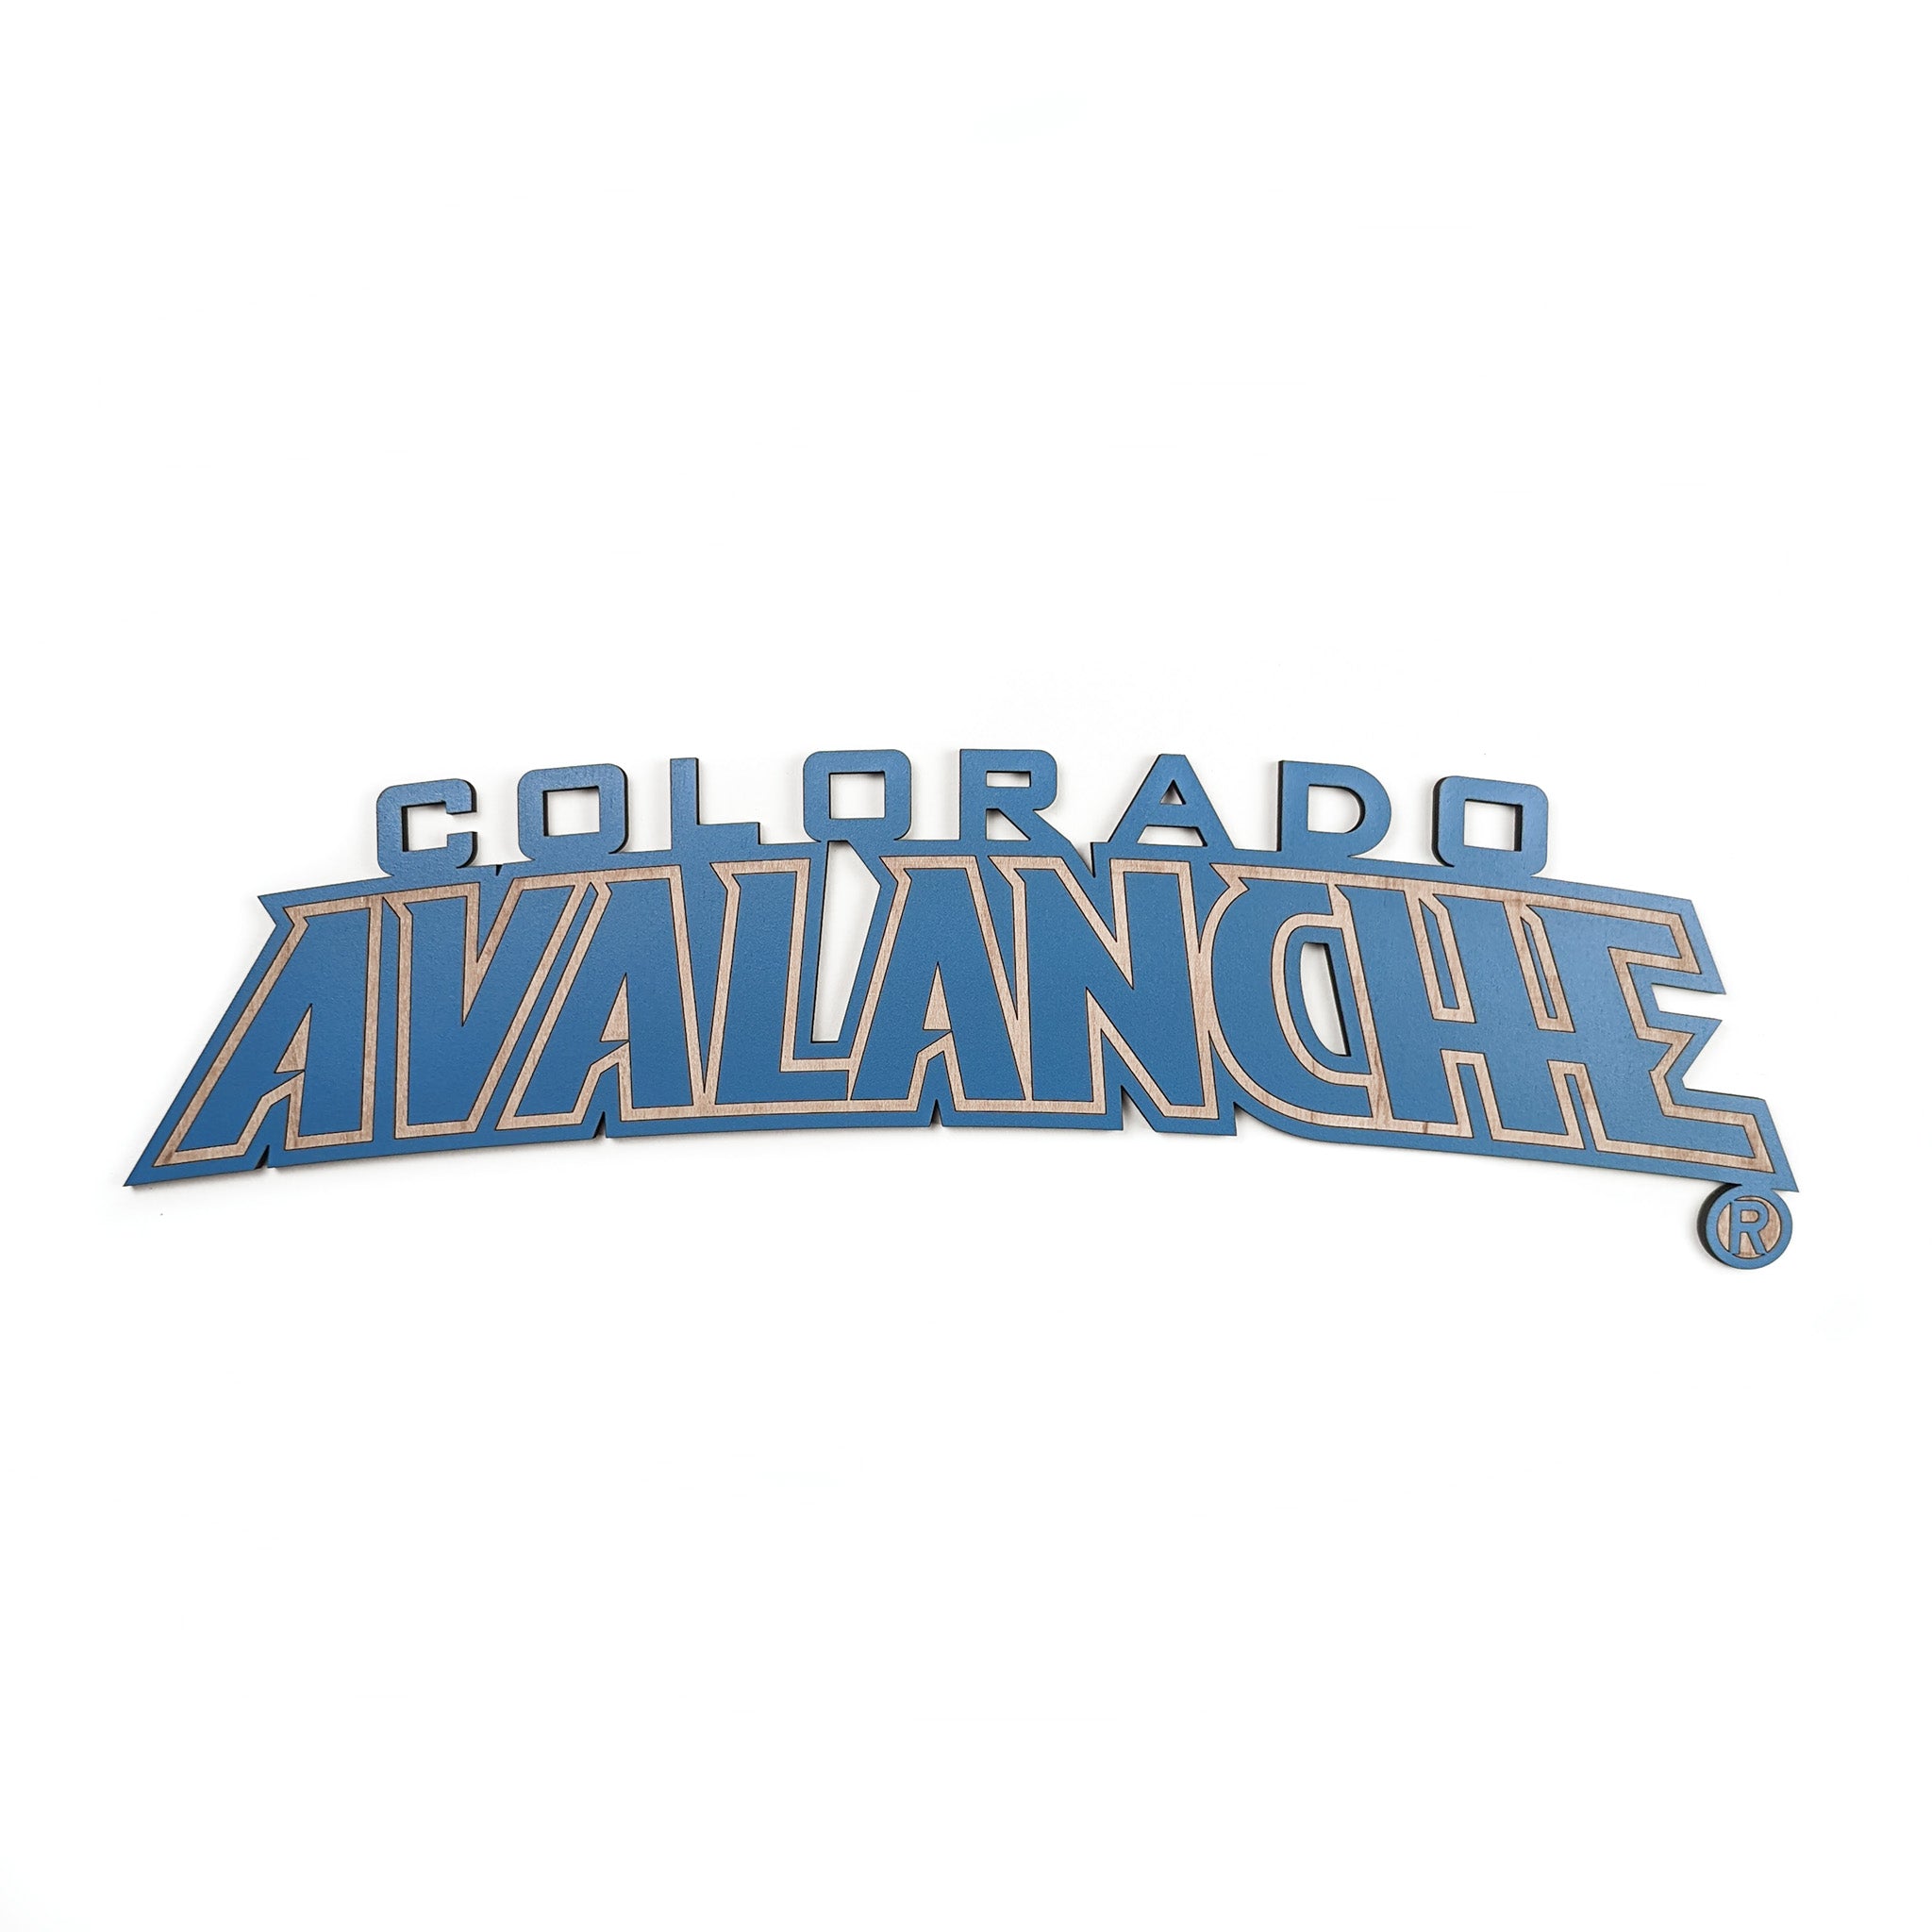 Colorado Avalanche Colorado Avalanche Team Tshirt - Kids